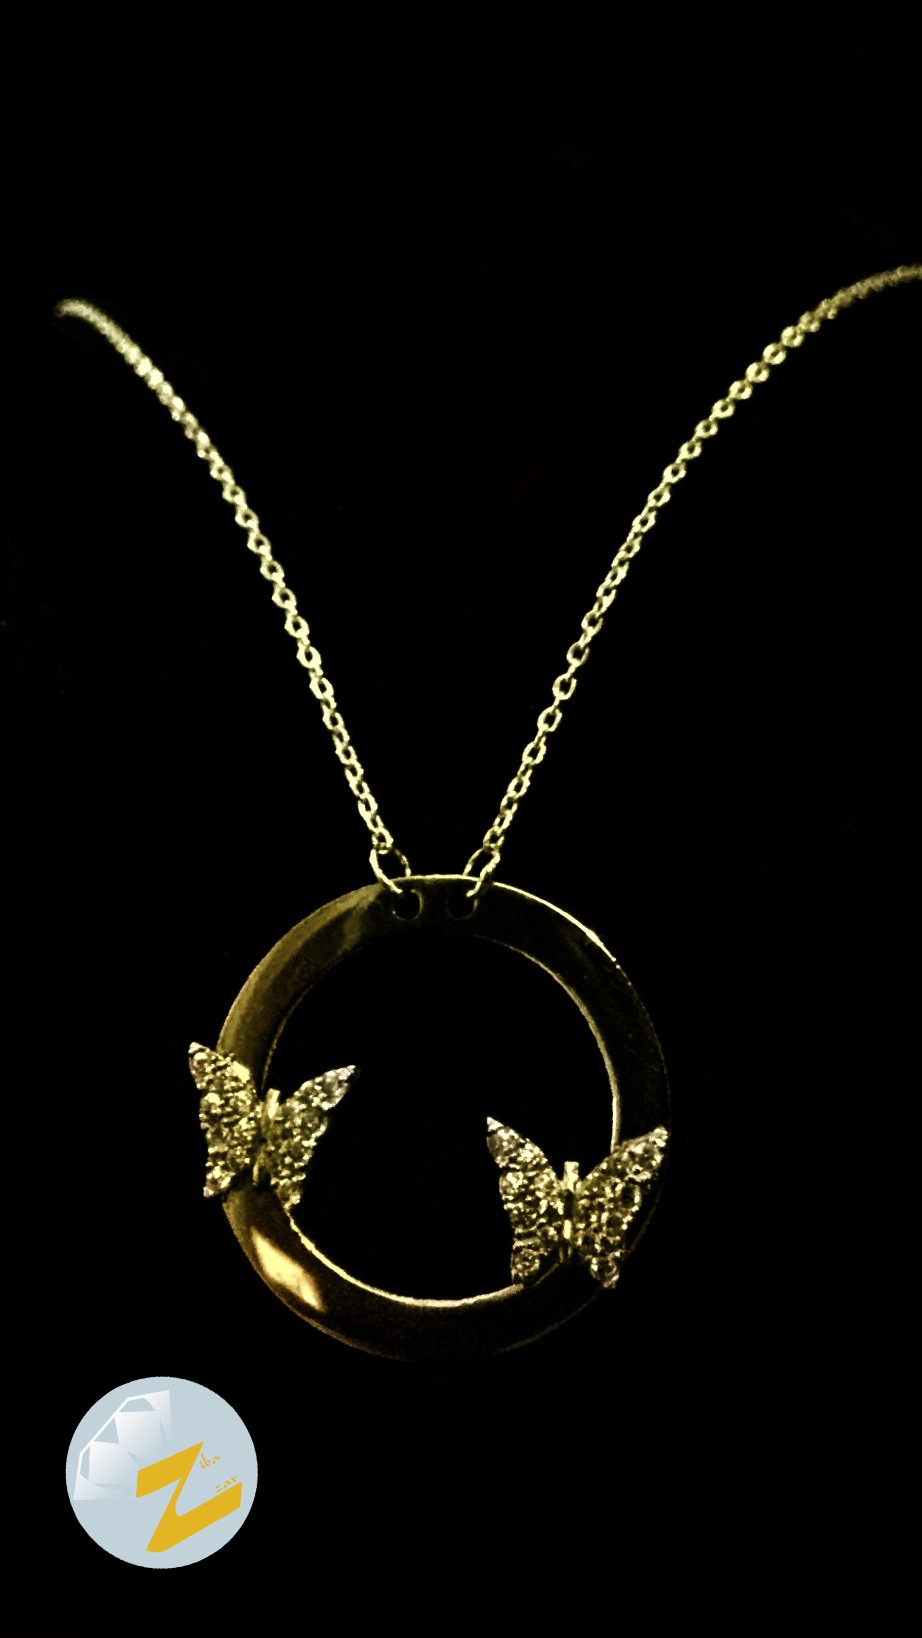 زیبا زر - طراحی طلا و جواهر شماره 1